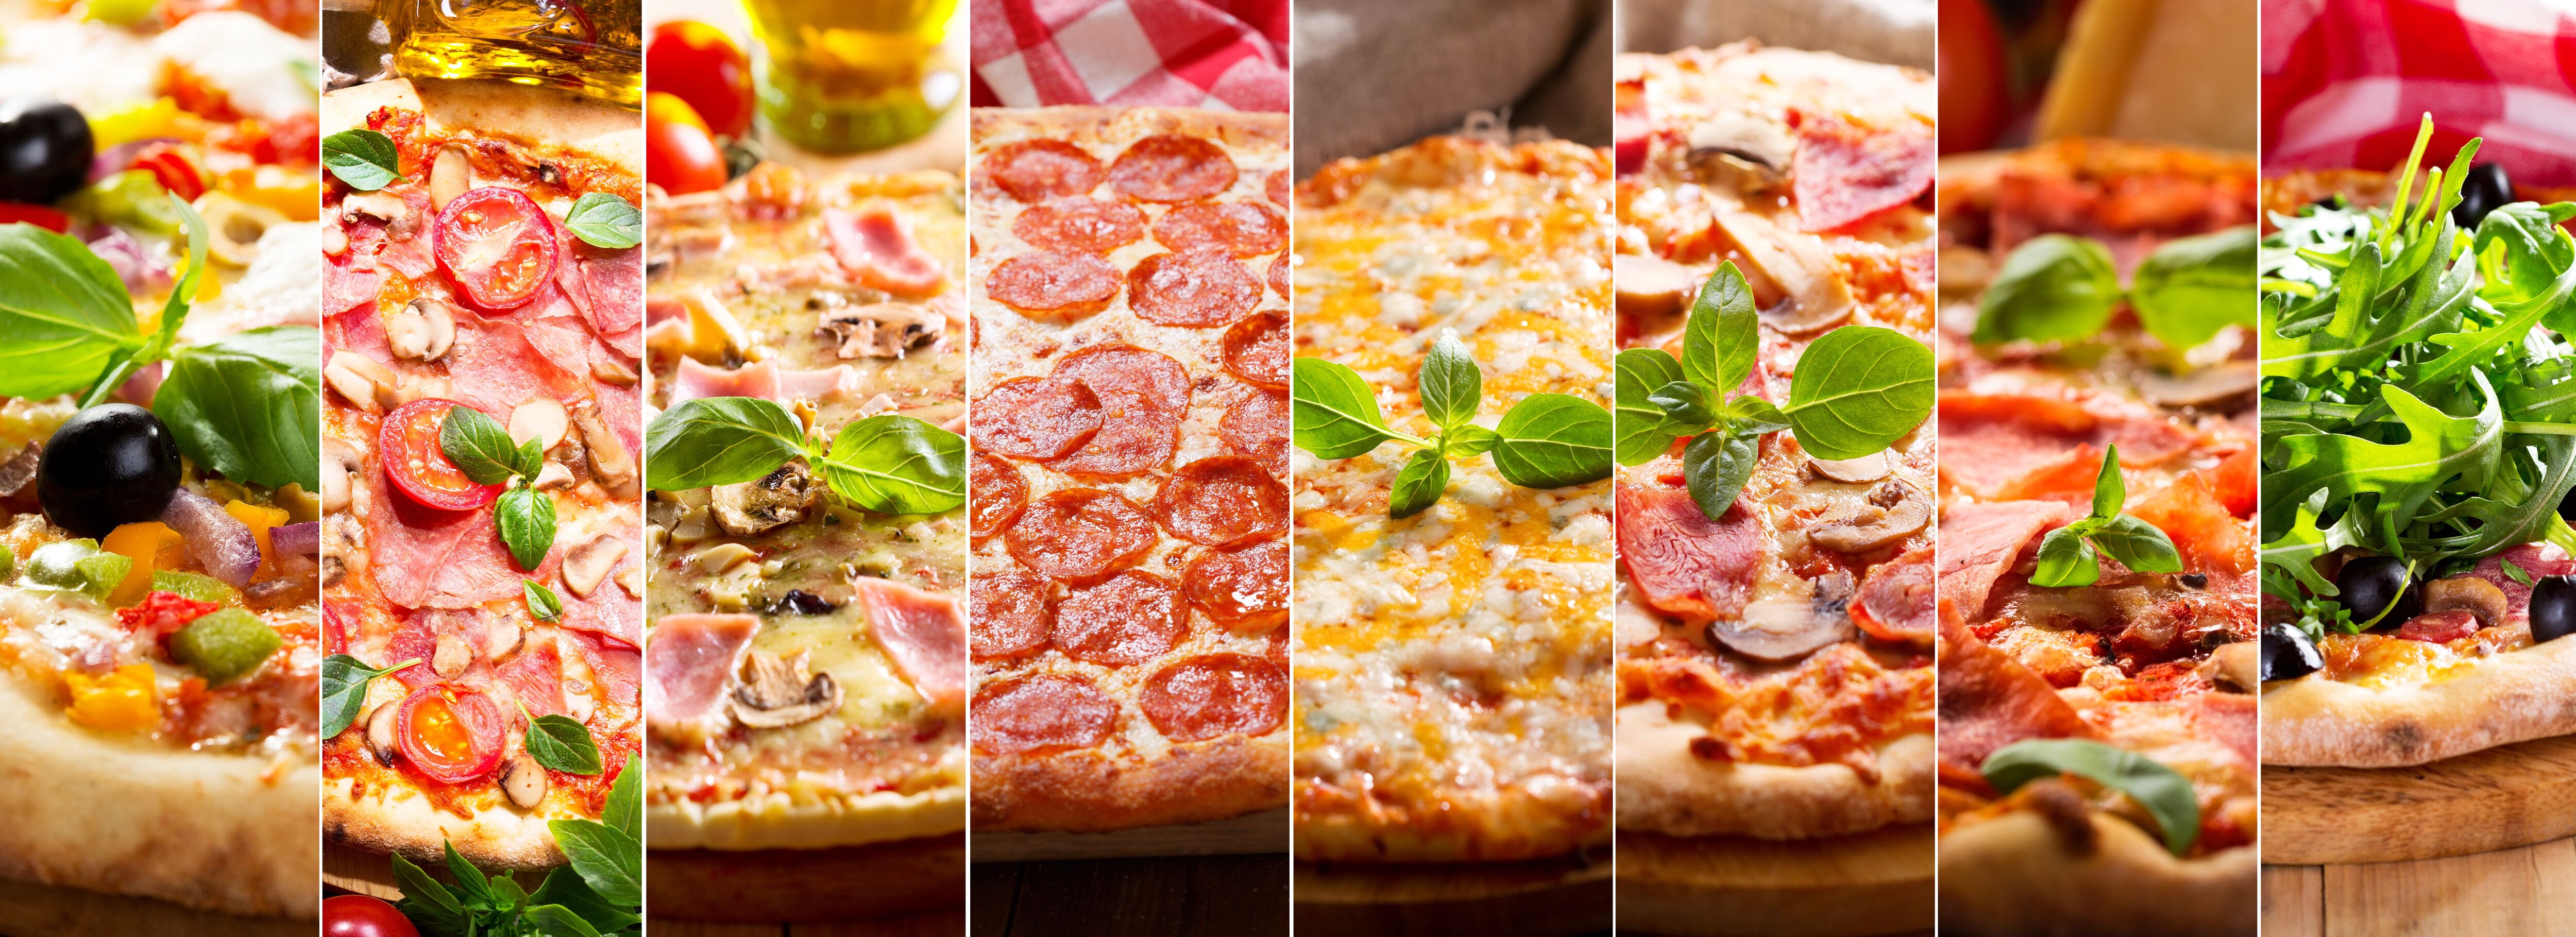 El 9 de febrero es el Día Mundial de la Pizza (Shutterstock)